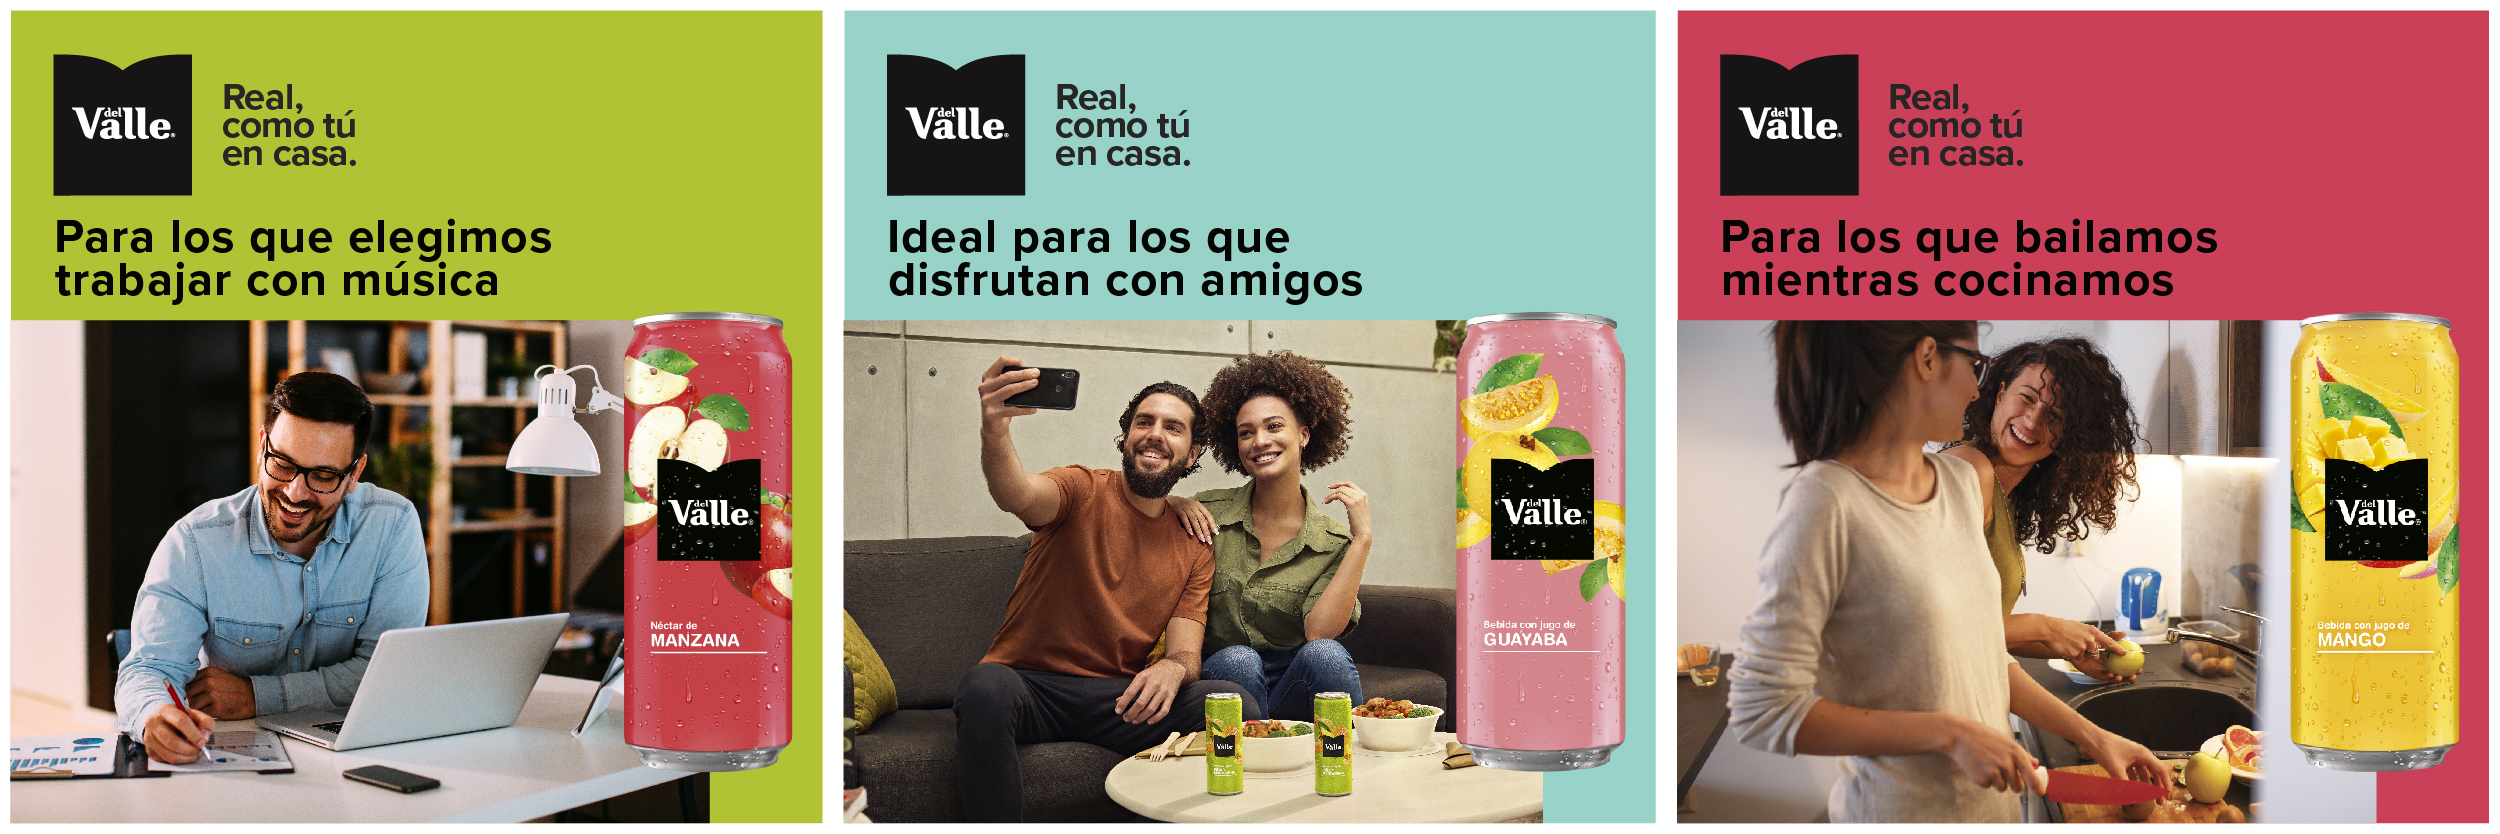 Välle: Una refrescante bebida de manzana, guayaba y mango, ideal para disfrutar en casa, trabajar con música y bailar mientras cocinamos.